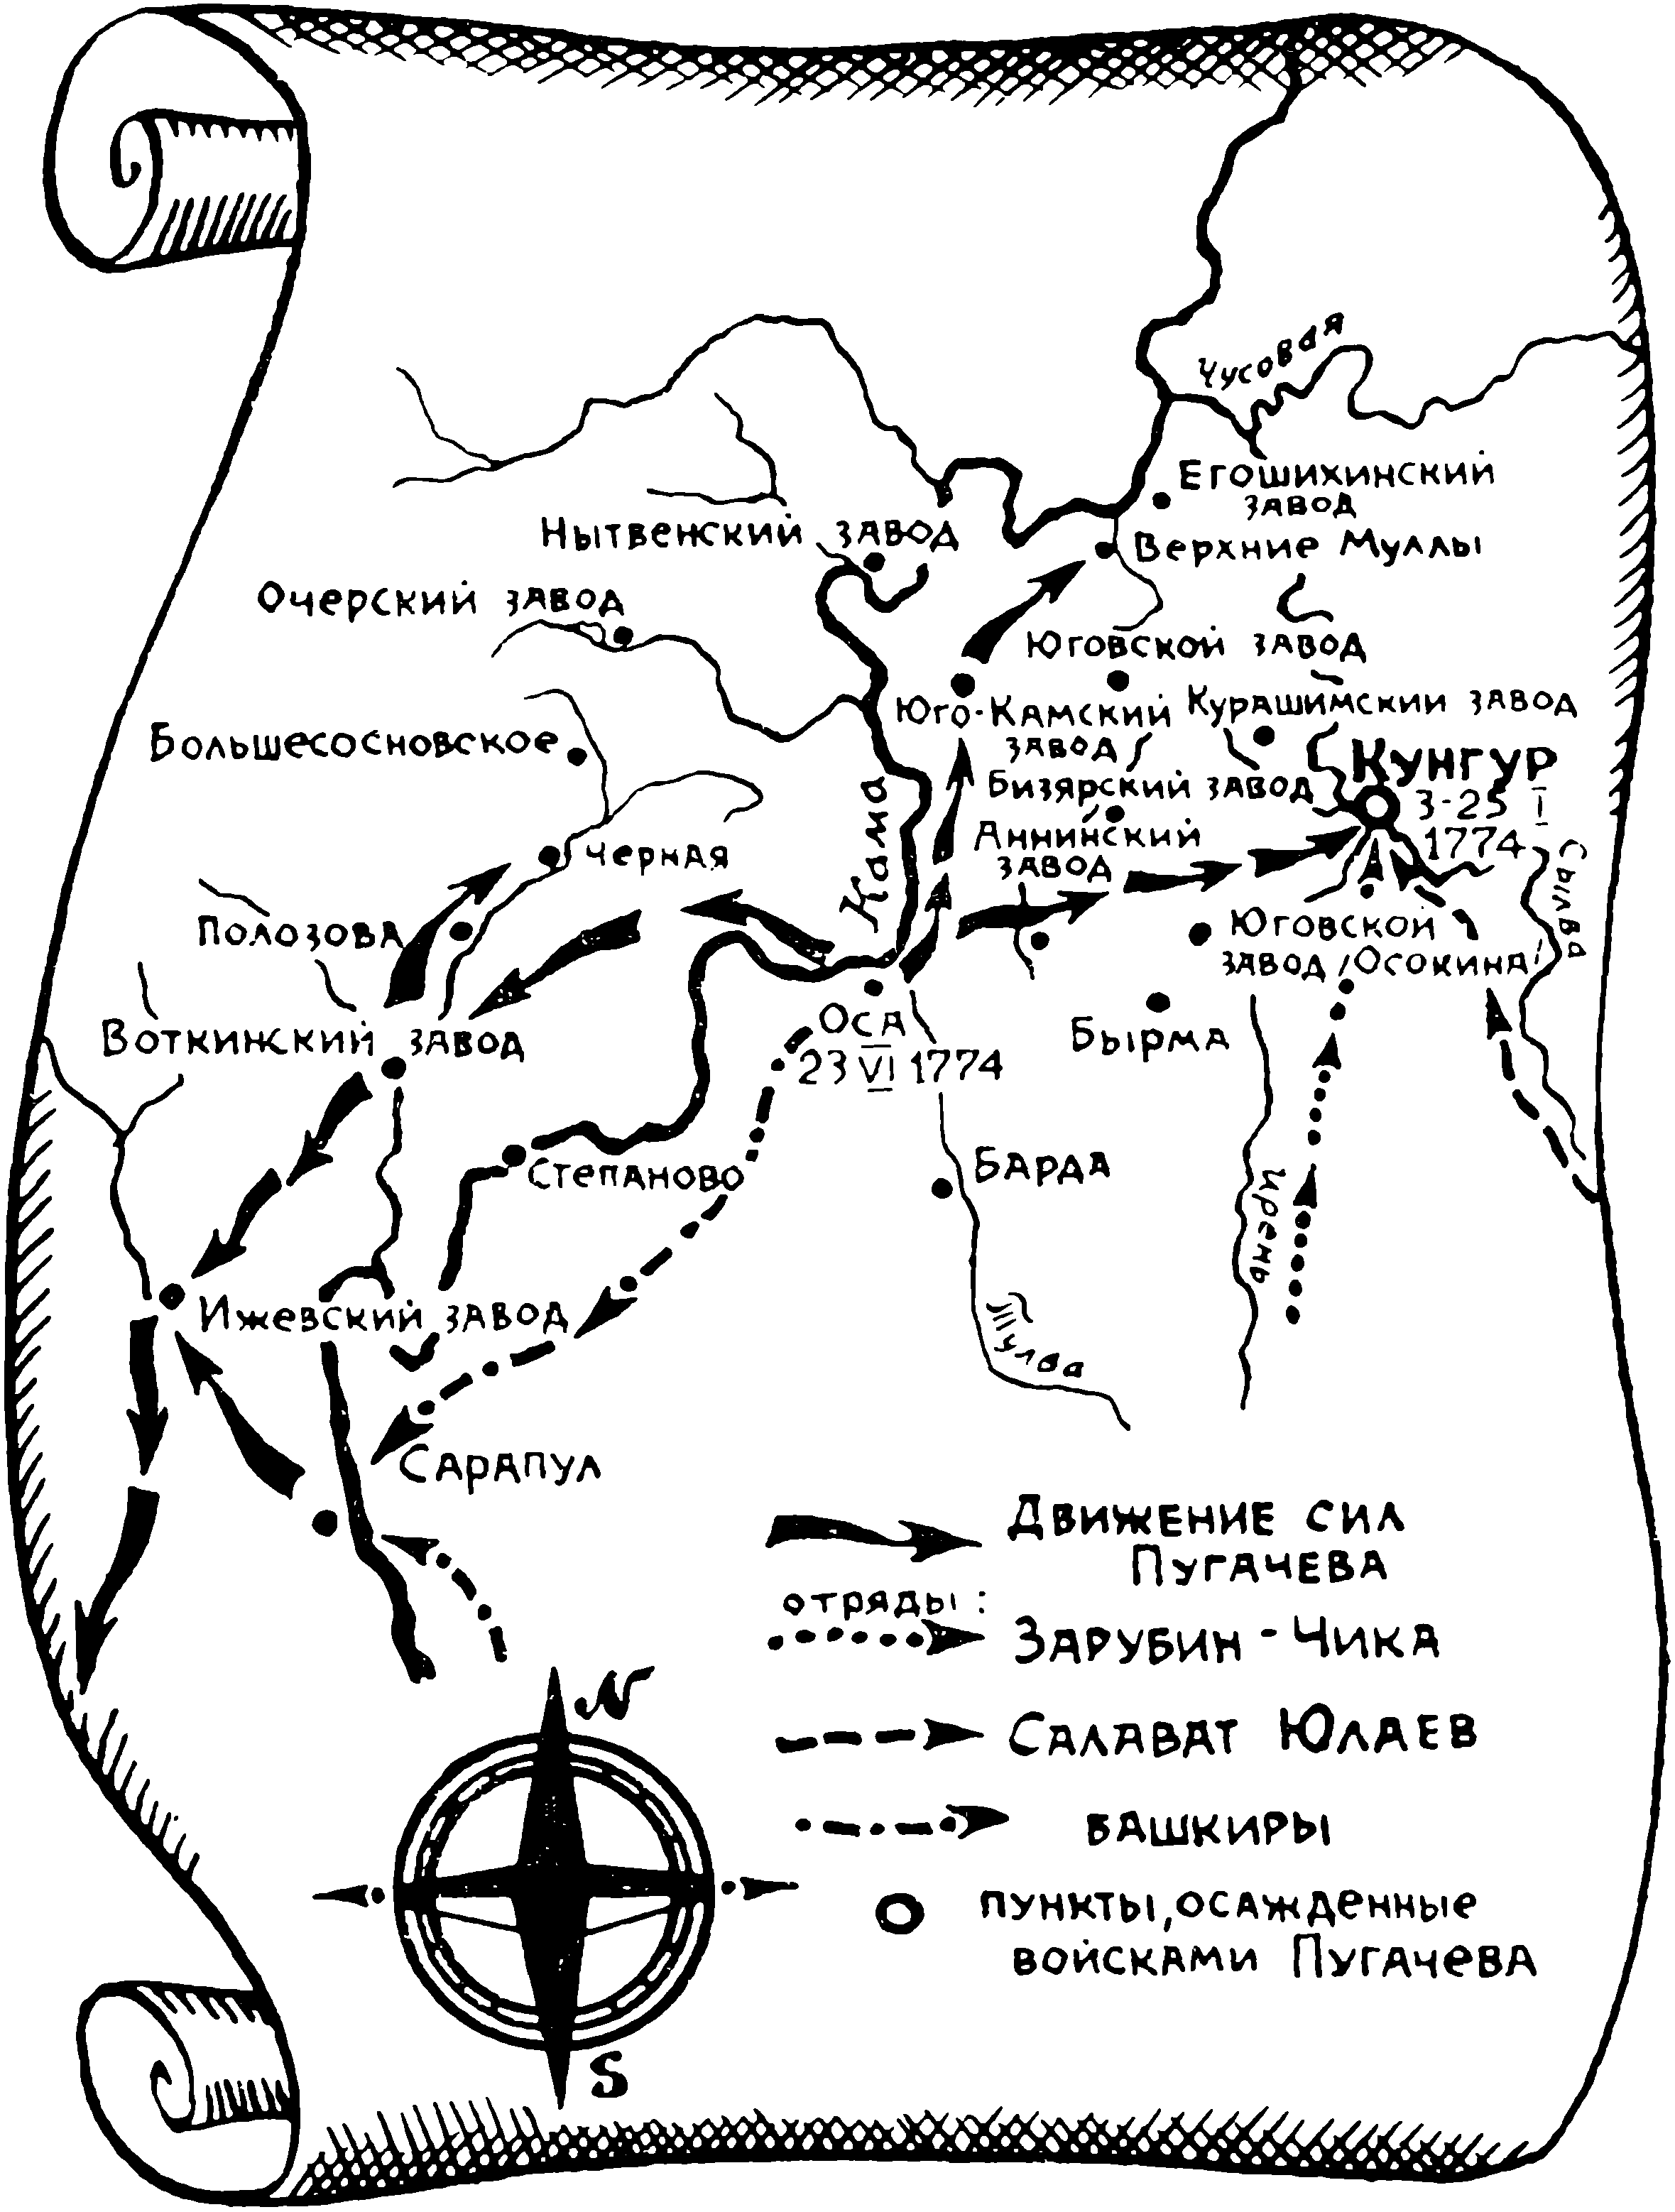 Среднее Прикамье в период крестьянской войны 11773—1775 годов